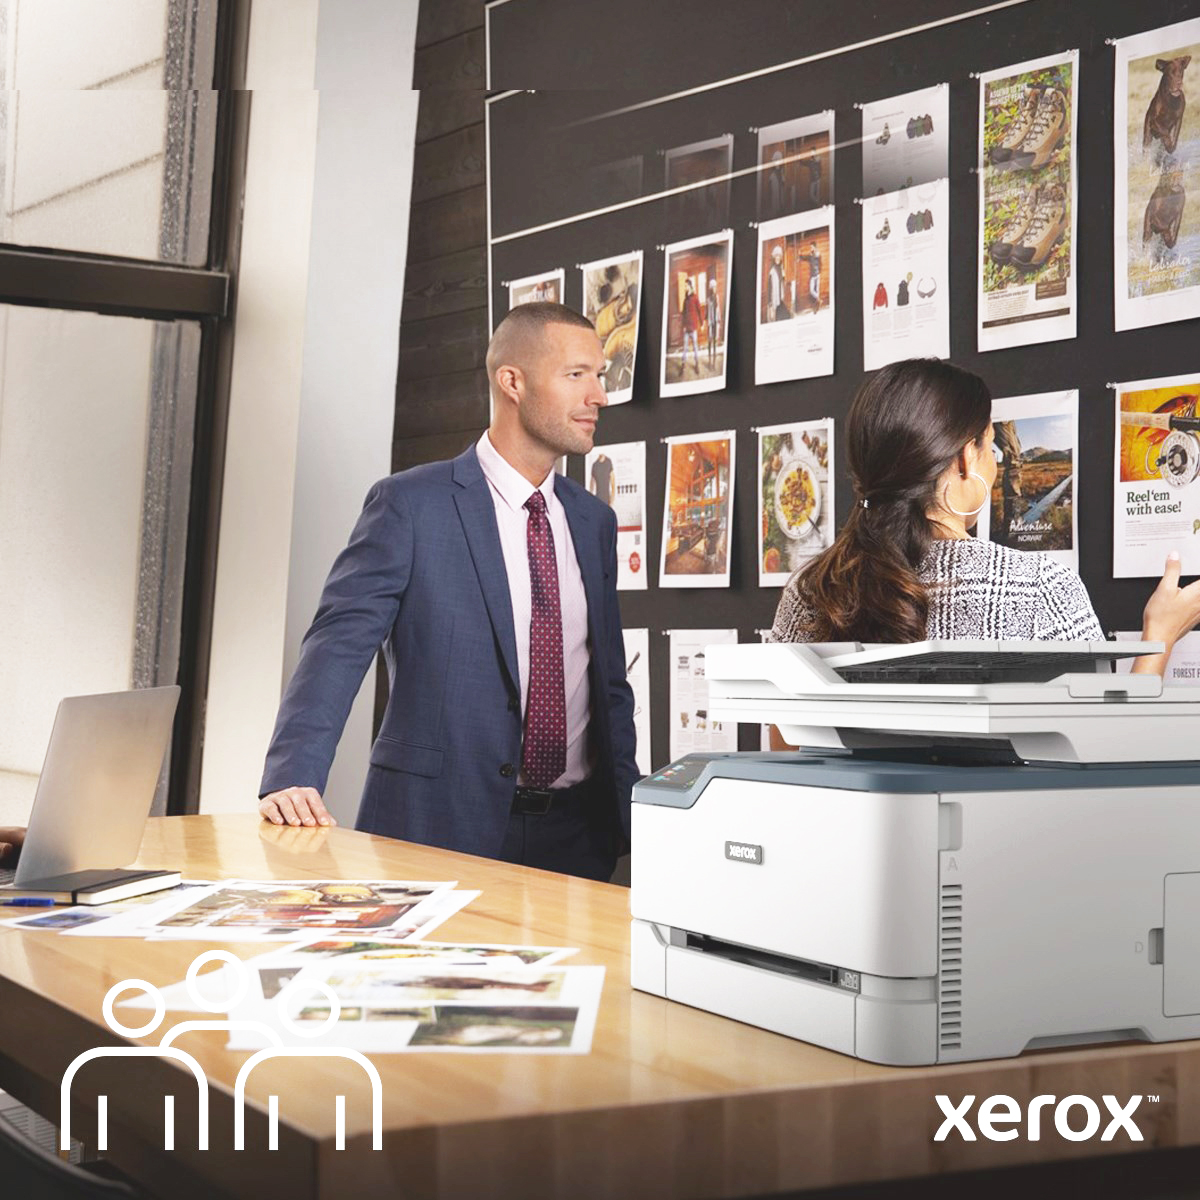 Image Xerox, montrant une réunion entre un Homme et une Femme avec une imprimante multifonction C235